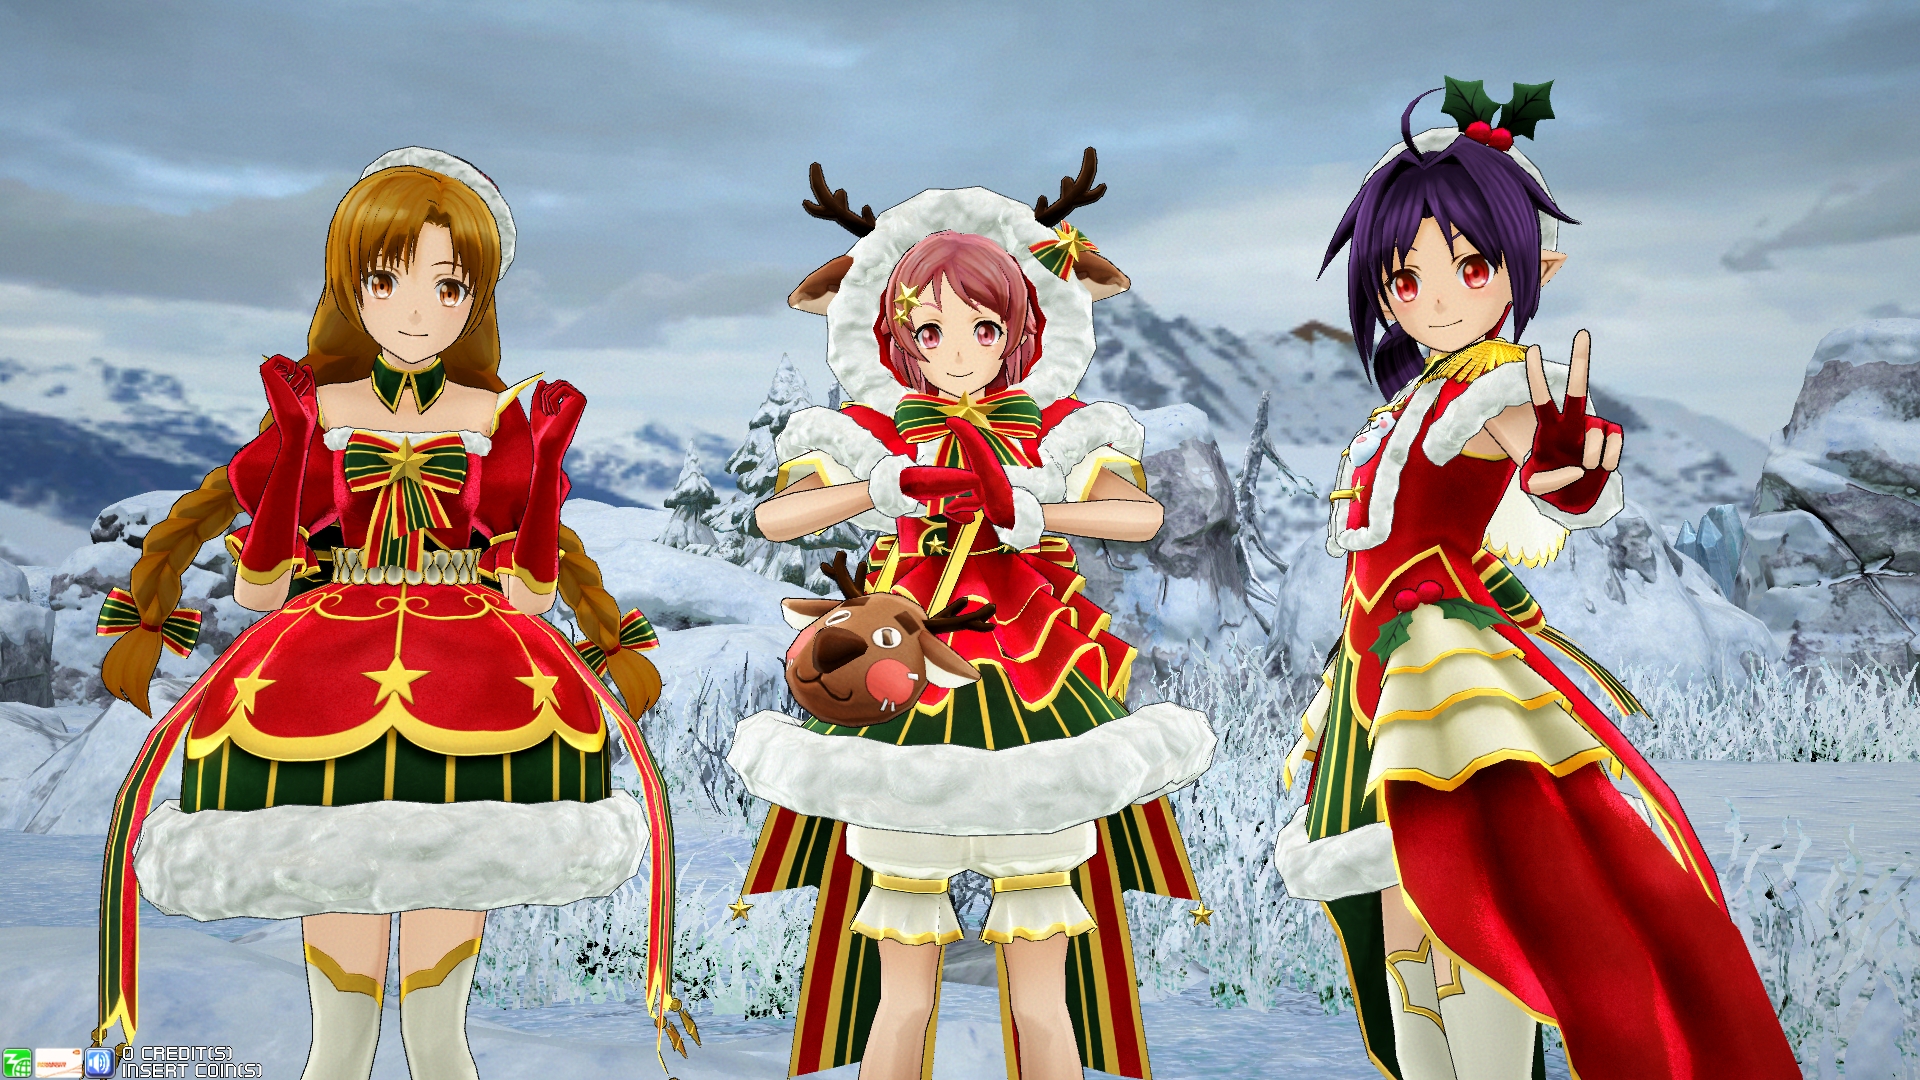 画像集no 002 Sao アーケード ディープ エクスプローラー サンタ衣装のユウキ アスナ リズベットが登場 クリスマスシーズンのアップデート情報を公開